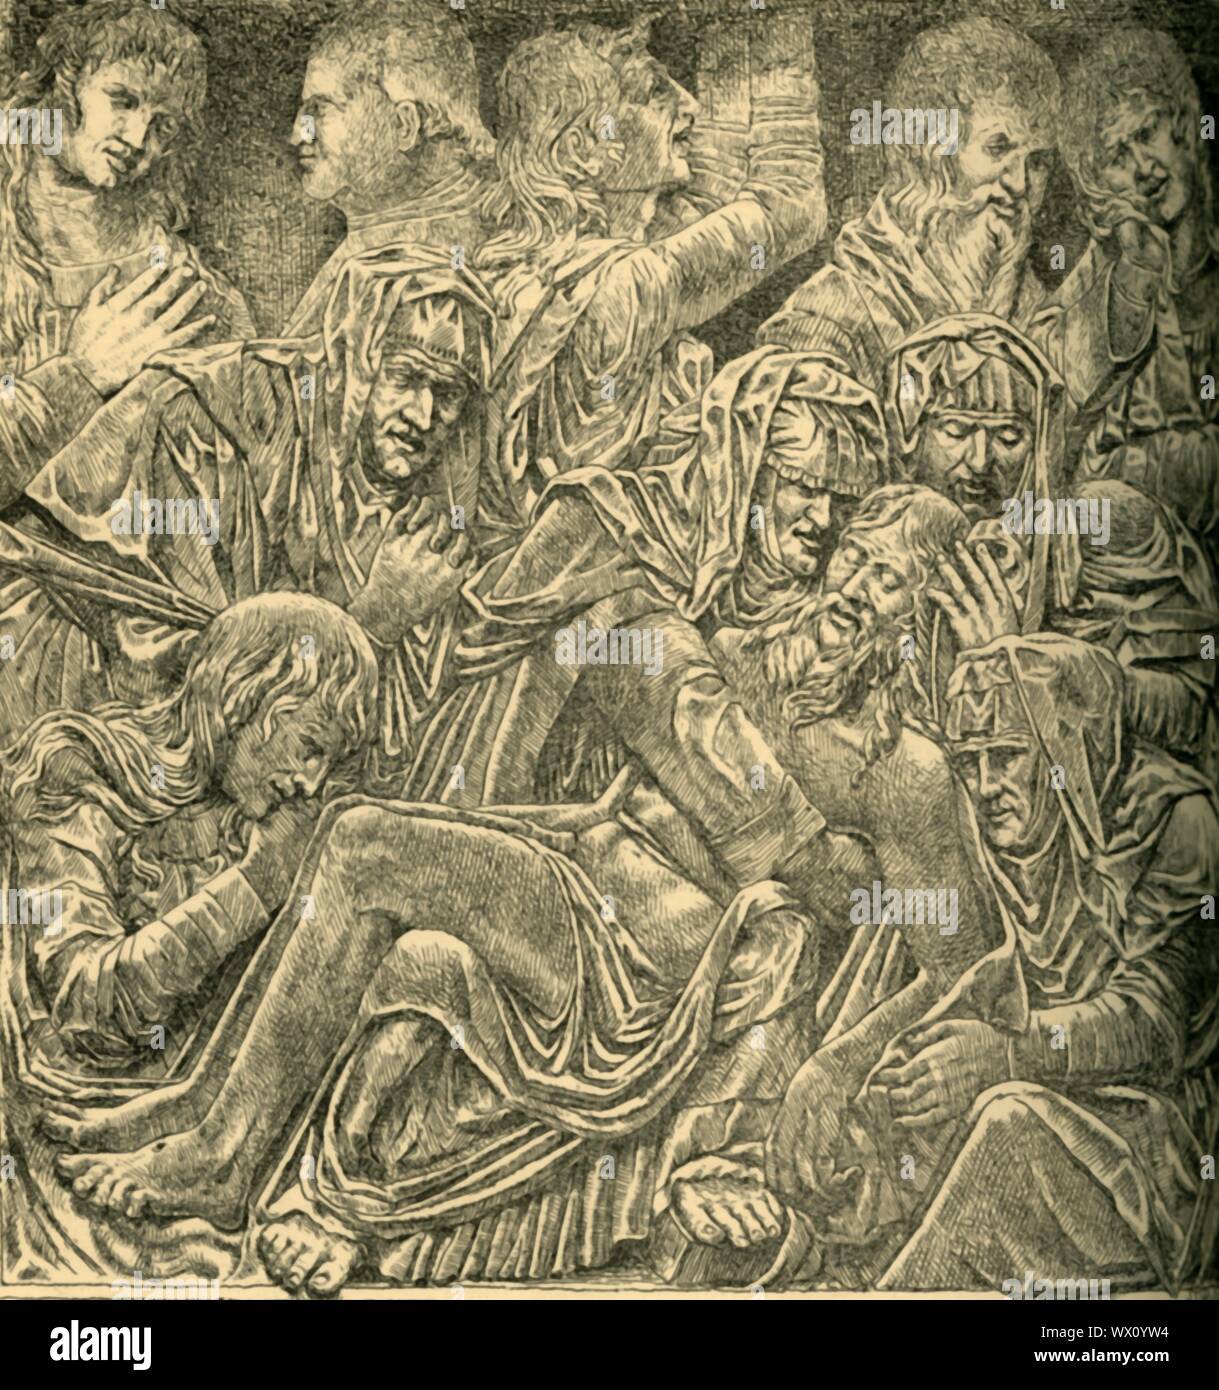 La Lamentación sobre Cristo Muerto, panel de mármol, c1470-1475, (1881). Aguafuerte de tallados realizados por Bartolomeo Bellano socorro a principios de los 1470s para la iglesia de los SS Trinité,&#xe0; en Padua, Italia. El grupo posiblemente formaban la parte central de un retablo y muestra a Cristo acostado en el regazo de la Virgen María, con María Magdalena, en la esquina inferior izquierda besando a Cristo de la mano derecha. El anciano en la fila superior, (segundo desde la izquierda, en el perfil), puede ser el donante de la pieza. Desde el "South Kensington Museum", un libro de ilustraciones, grabados con descripciones, de las obras de arte en el Foto de stock